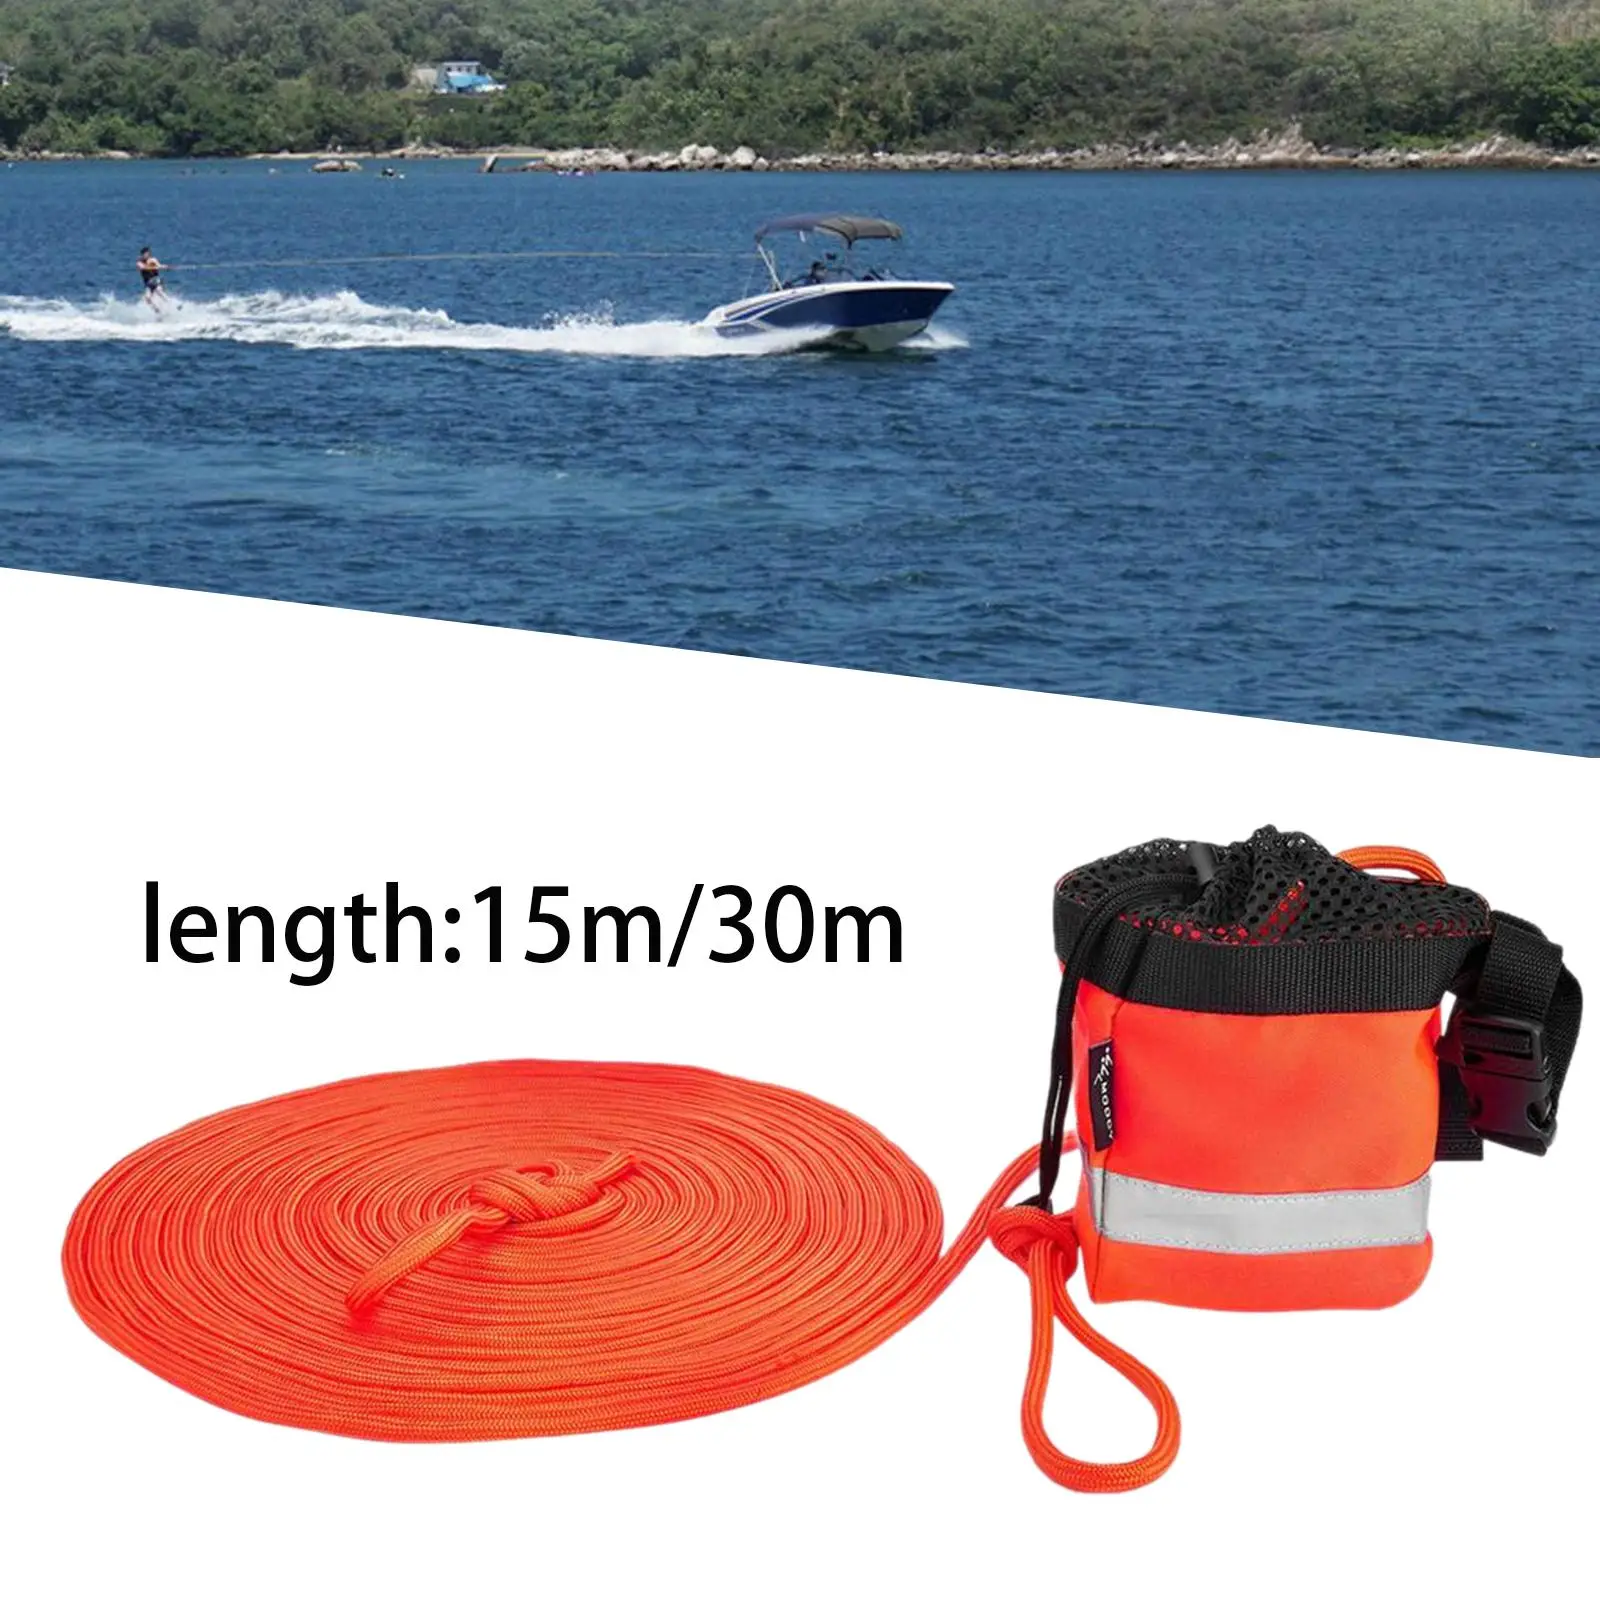 Corda galleggiante per borsa da tiro per accessori per attrezzature pesca sul ghiaccio